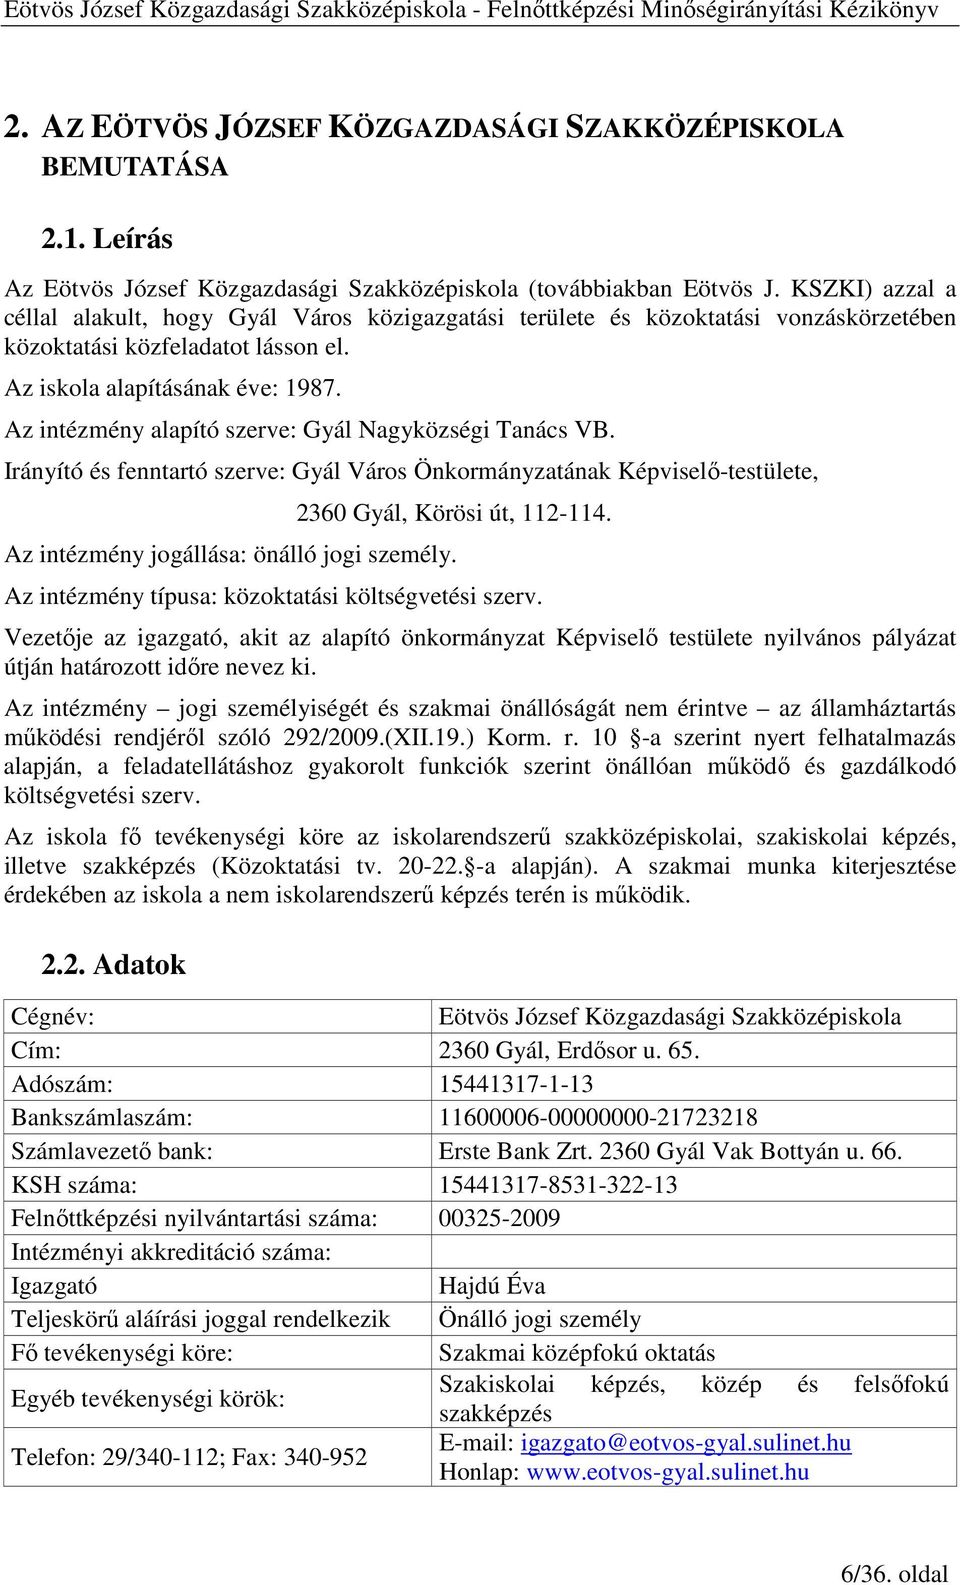 Az intézmény alapító szerve: Gyál Nagyközségi Tanács VB. Irányító és fenntartó szerve: Gyál Város Önkormányzatának Képviselı-testülete, 2360 Gyál, Körösi út, 112-114.